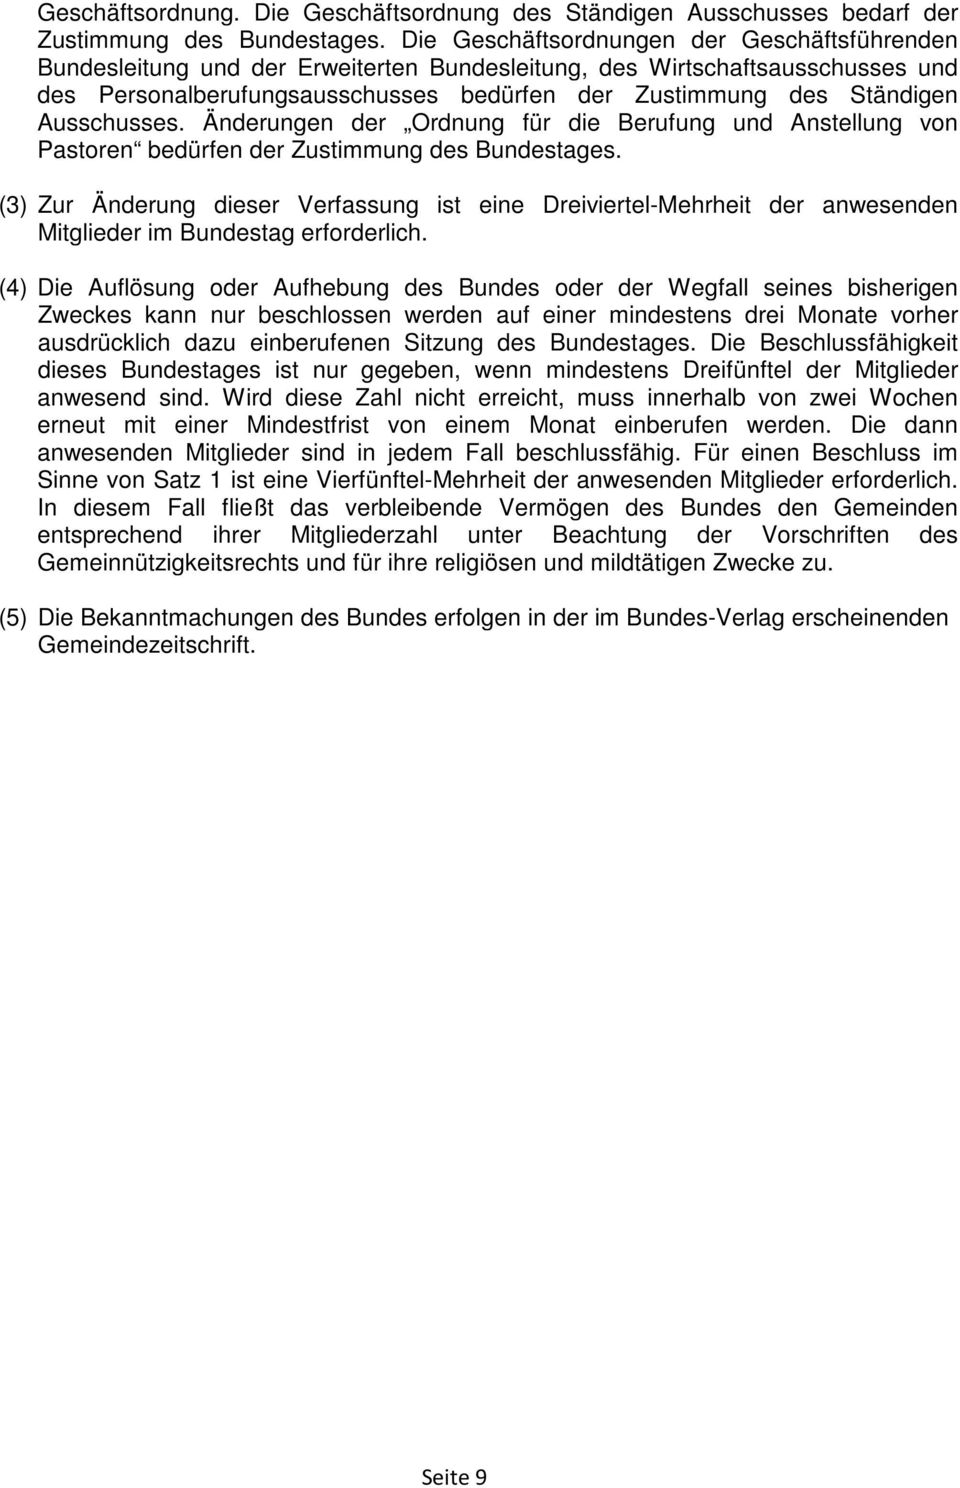 Ausschusses. Änderungen der Ordnung für die Berufung und Anstellung von Pastoren bedürfen der Zustimmung des Bundestages.